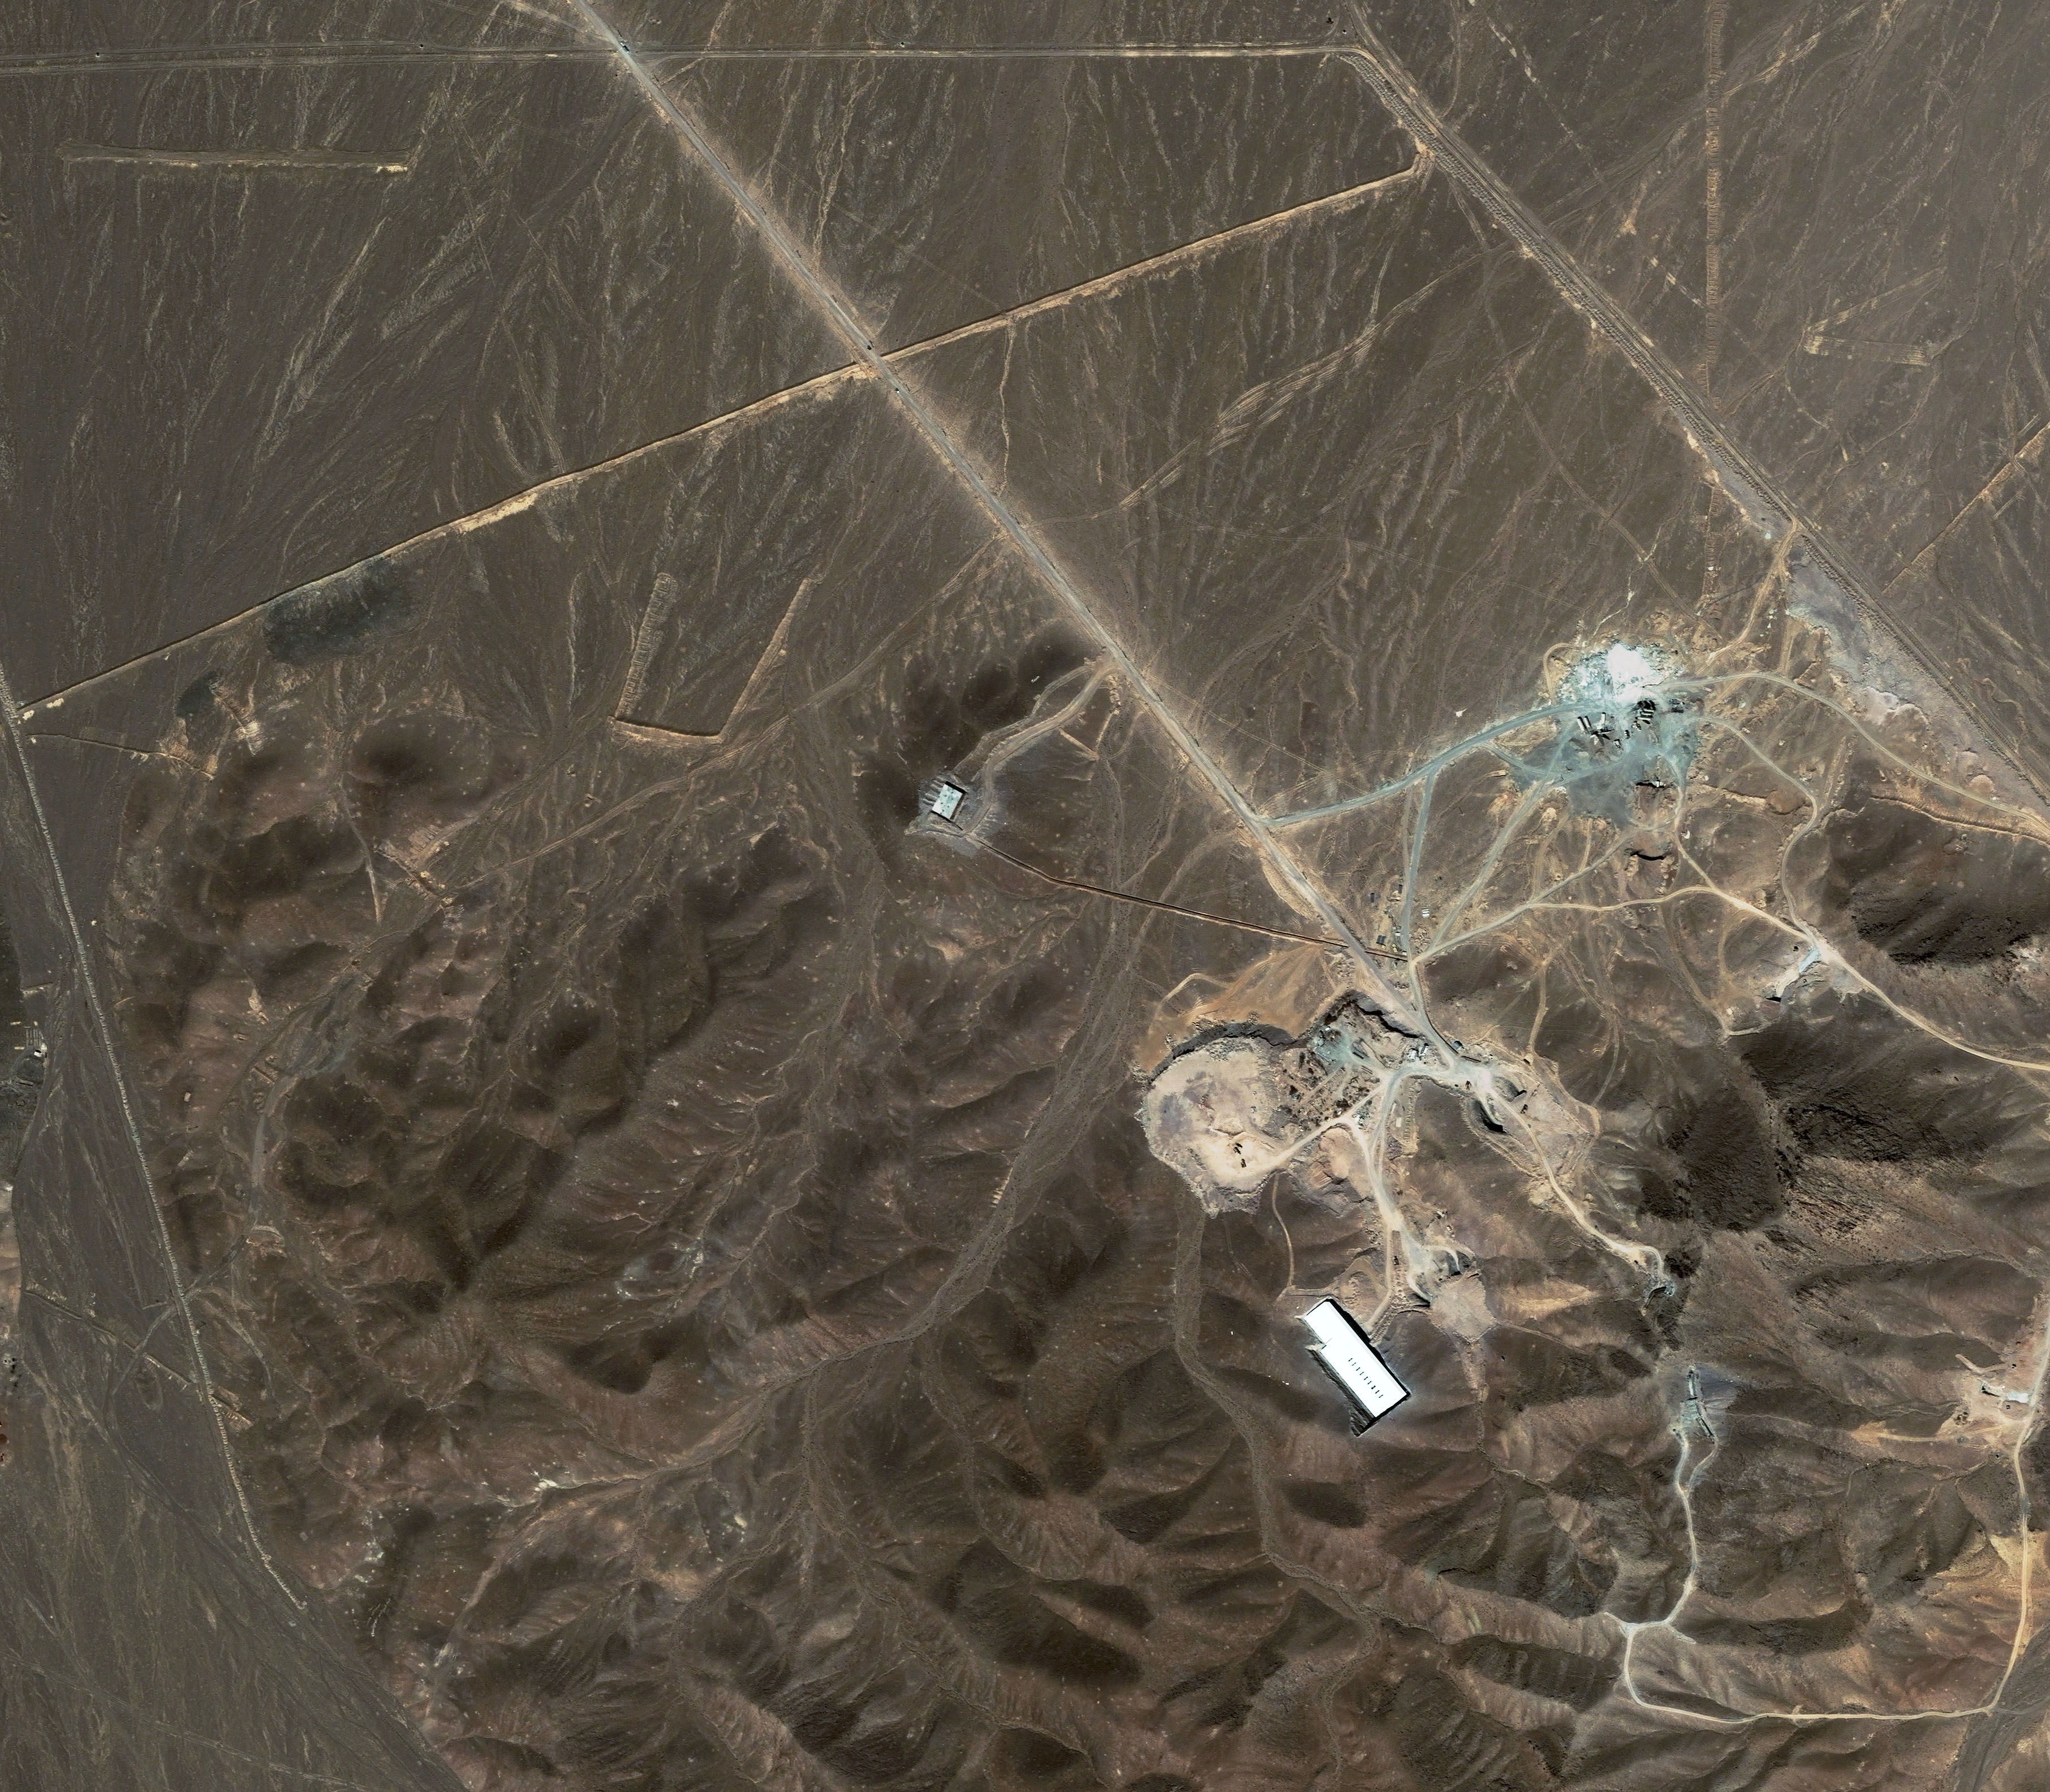 Ett satellitfoto över en av Irans misstänkta kärnvapenanläggningar. Det är dessa som israeliska soldater nu befinner sig i Iran för att övervaka.